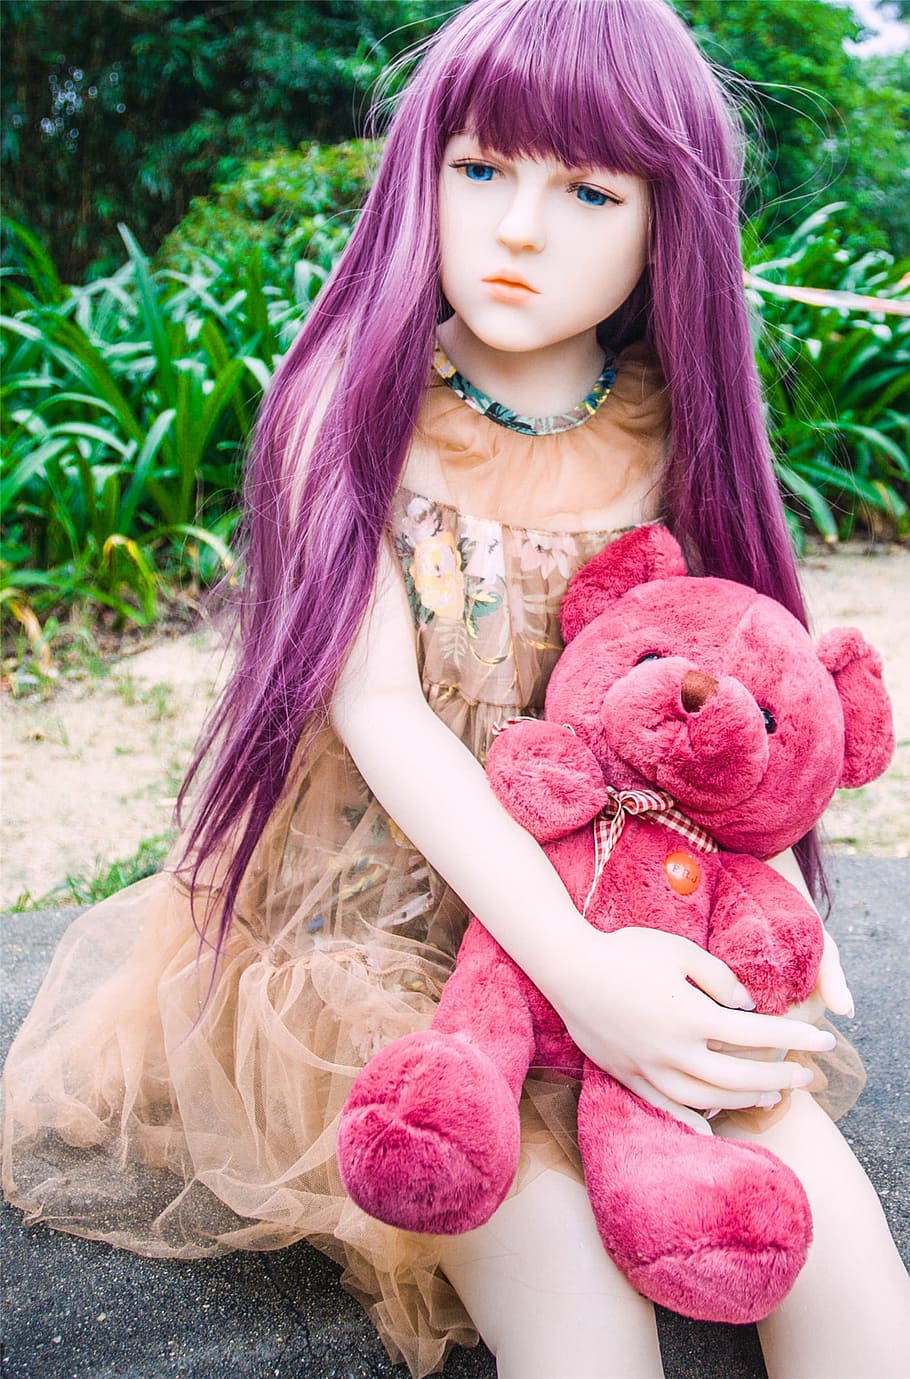 人形 リアルに見える おもちゃ シリコン テディベア ピンク ゴム 現実的 長い髪 女の子 Pxfuel